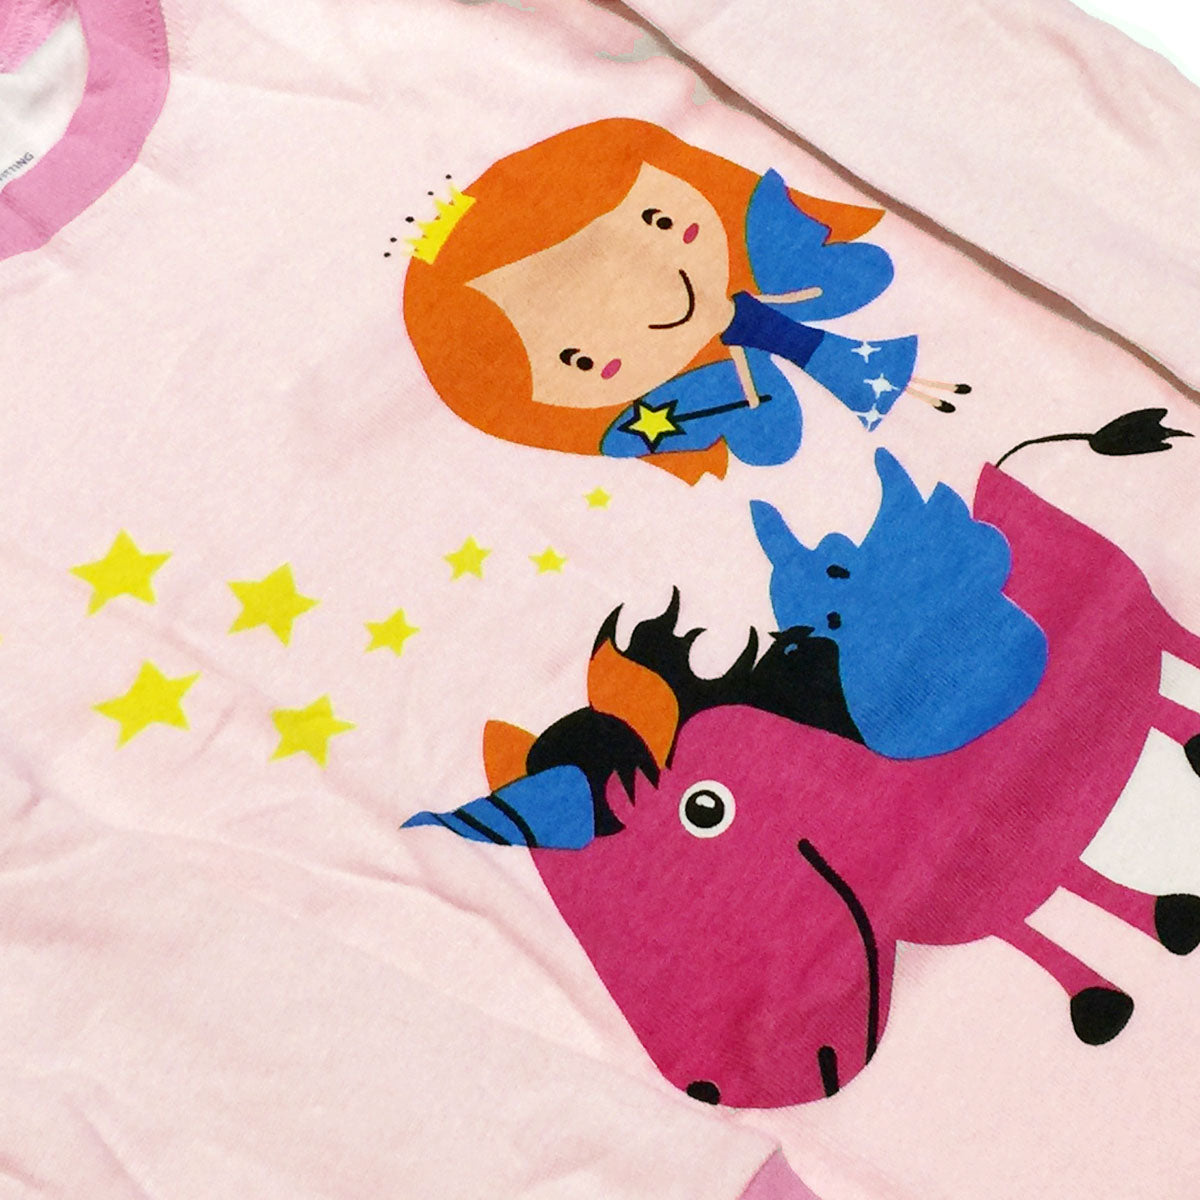 Dabuyu Unicorn & Fairy Children's Pajamas